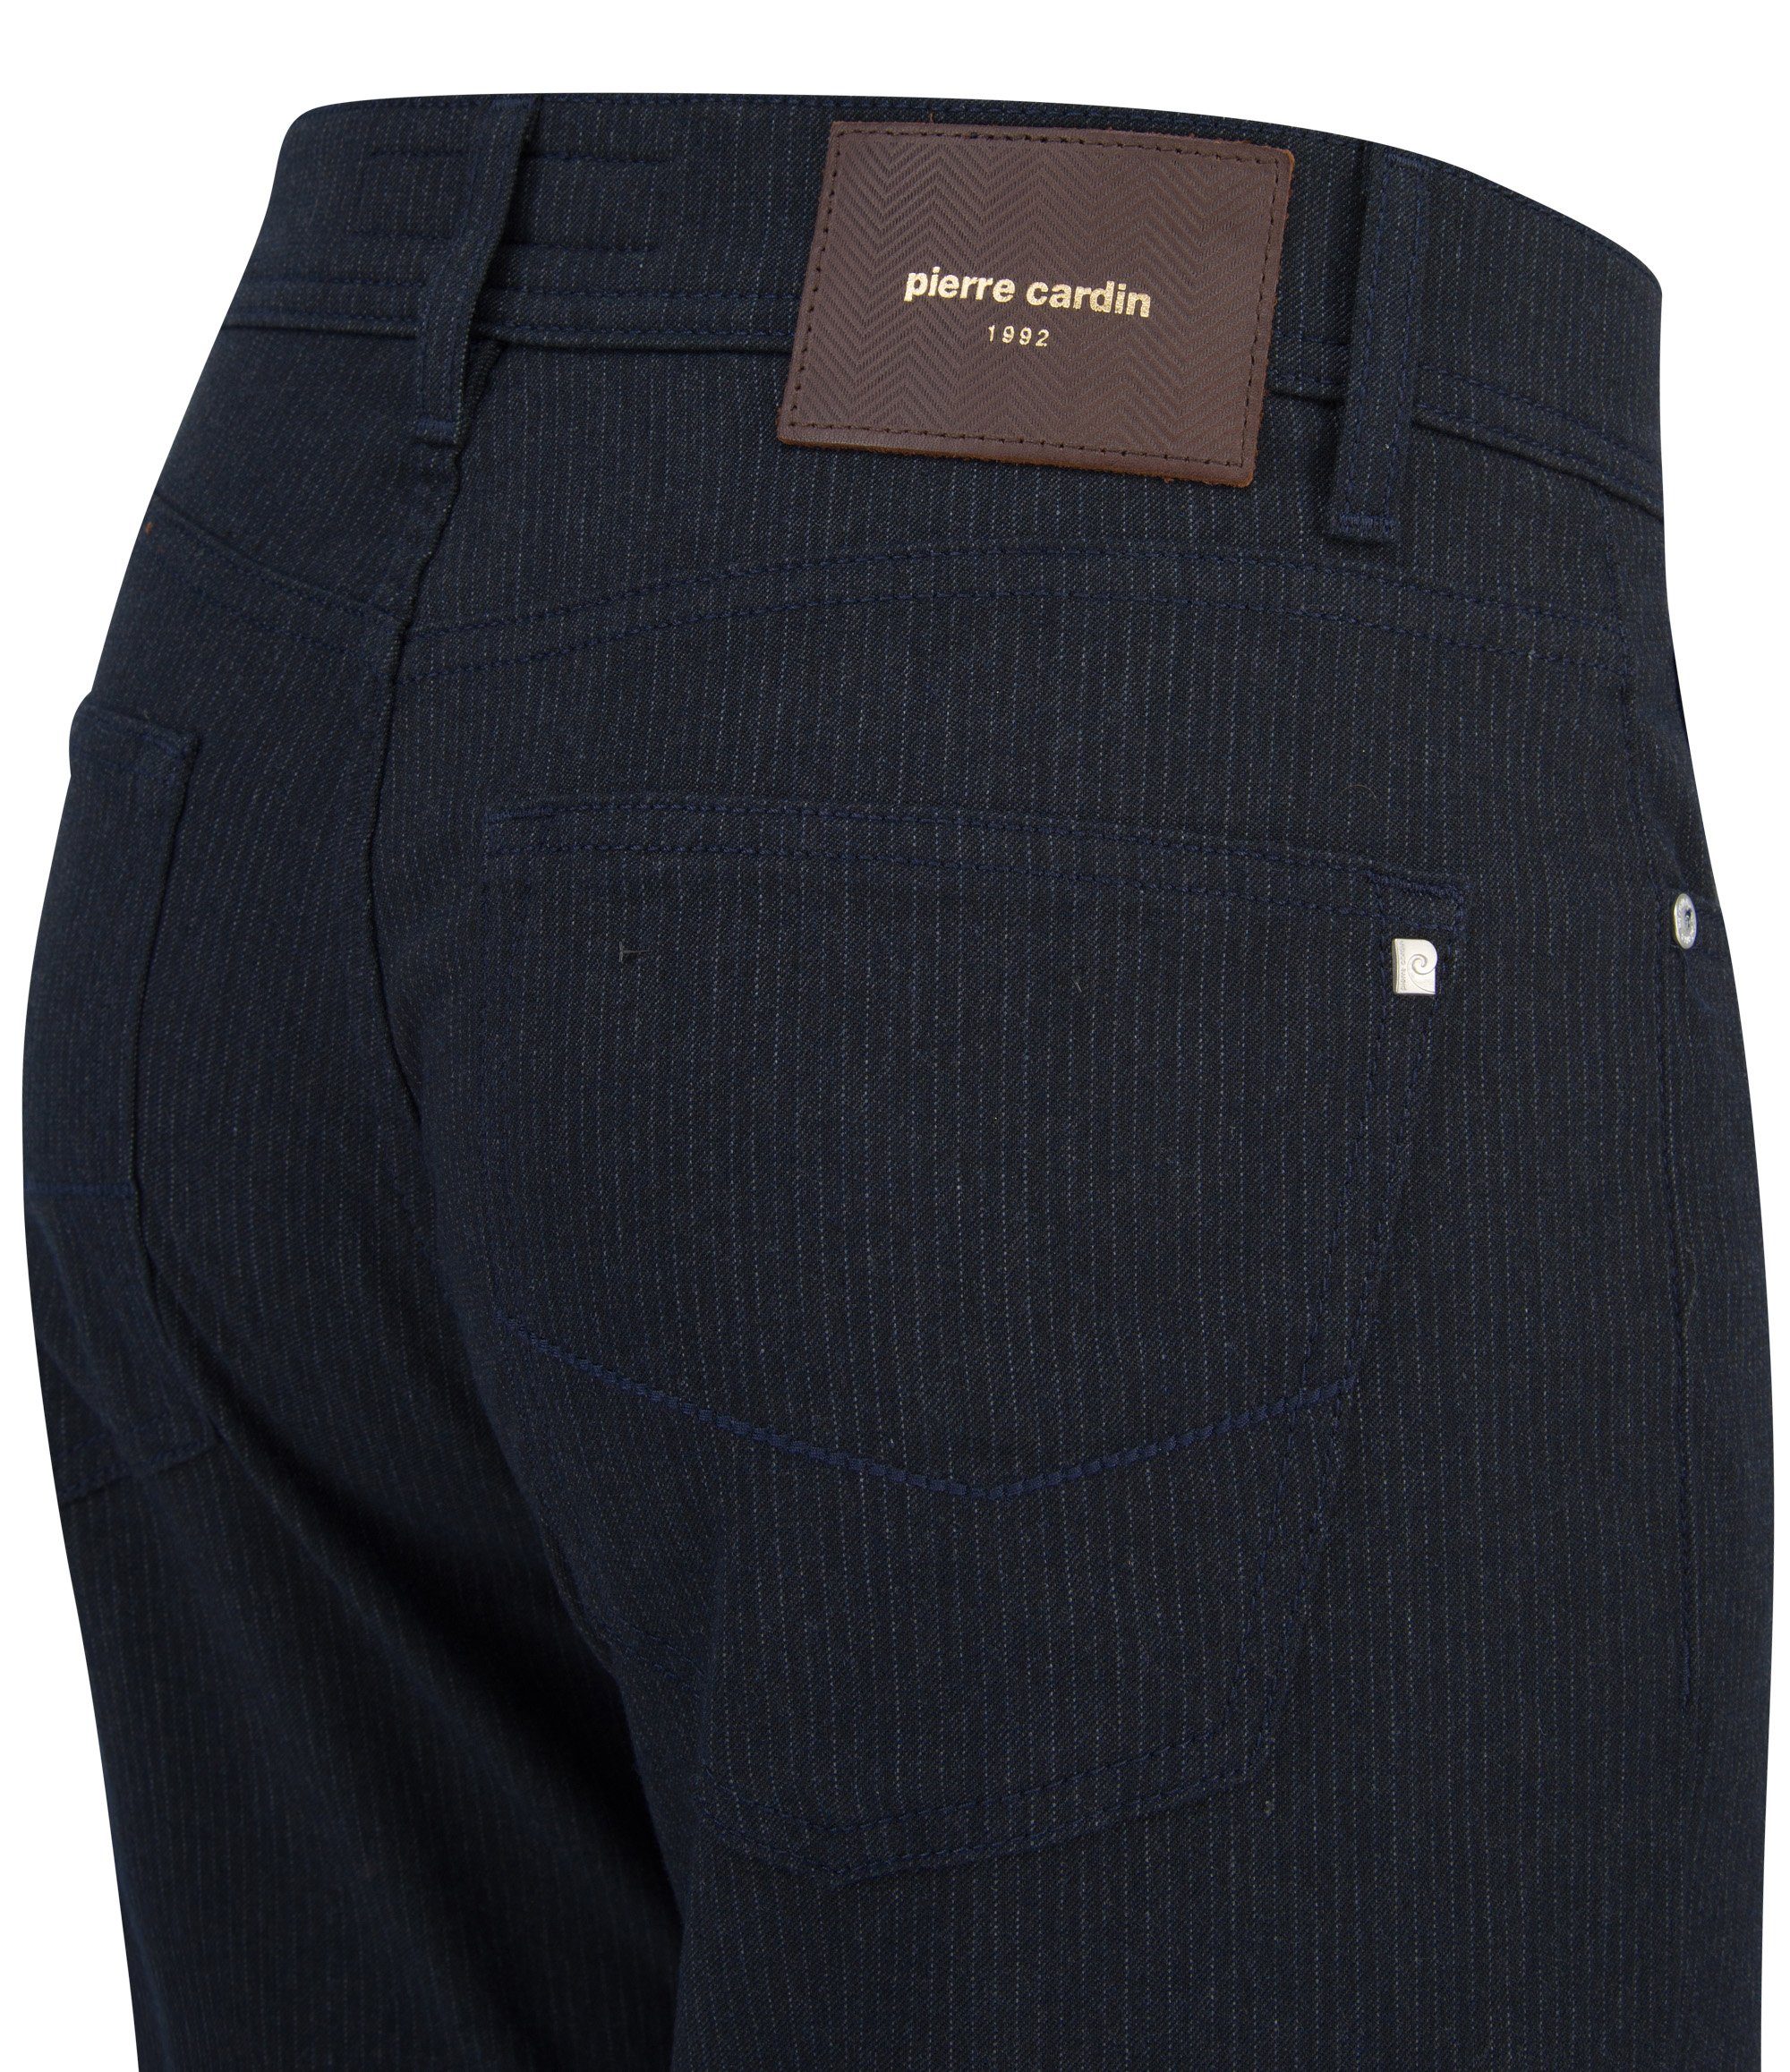 Pierre Cardin 5-Pocket-Jeans PIERRE - dark 4795.68 LYON grey stripes VOYAGE 30917 chalk CARDIN